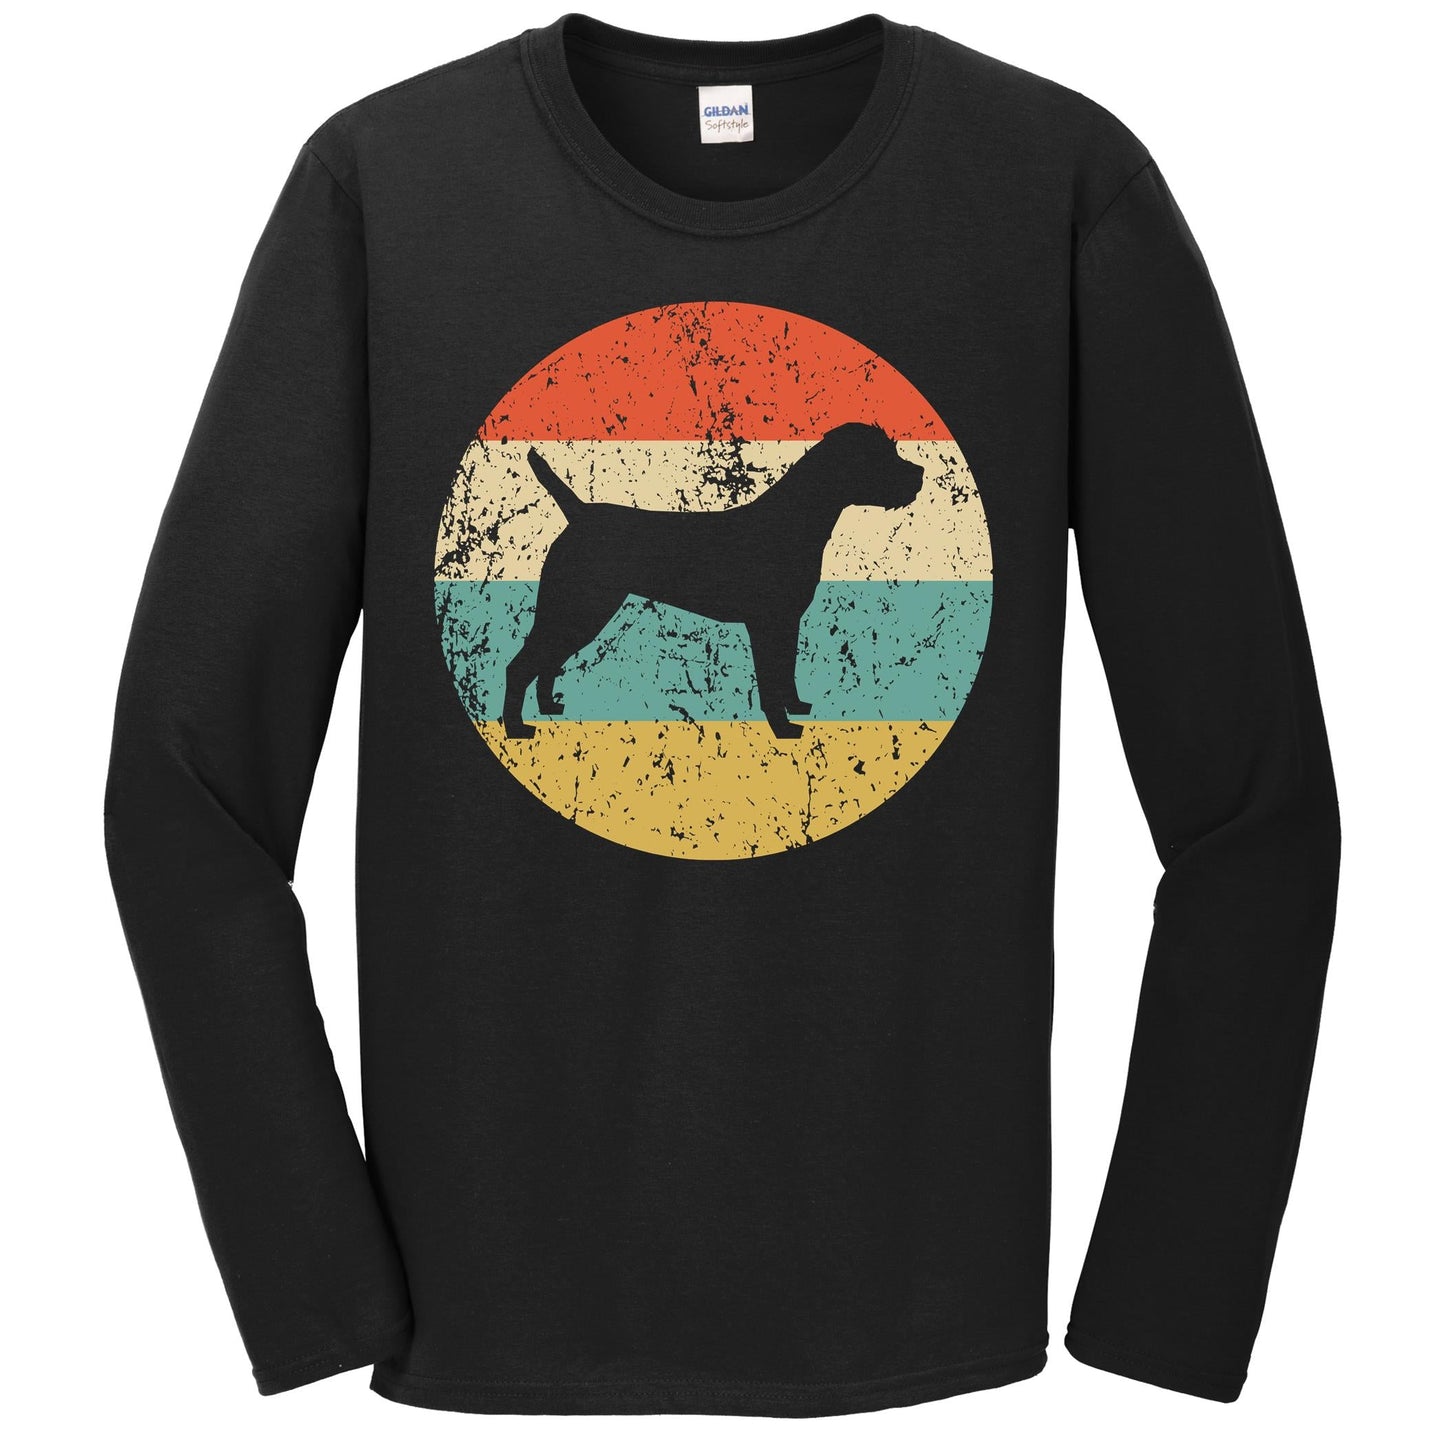 Border Terrier Shirt - Retro Border Terrier Dog Long Sleeve T-Shirt